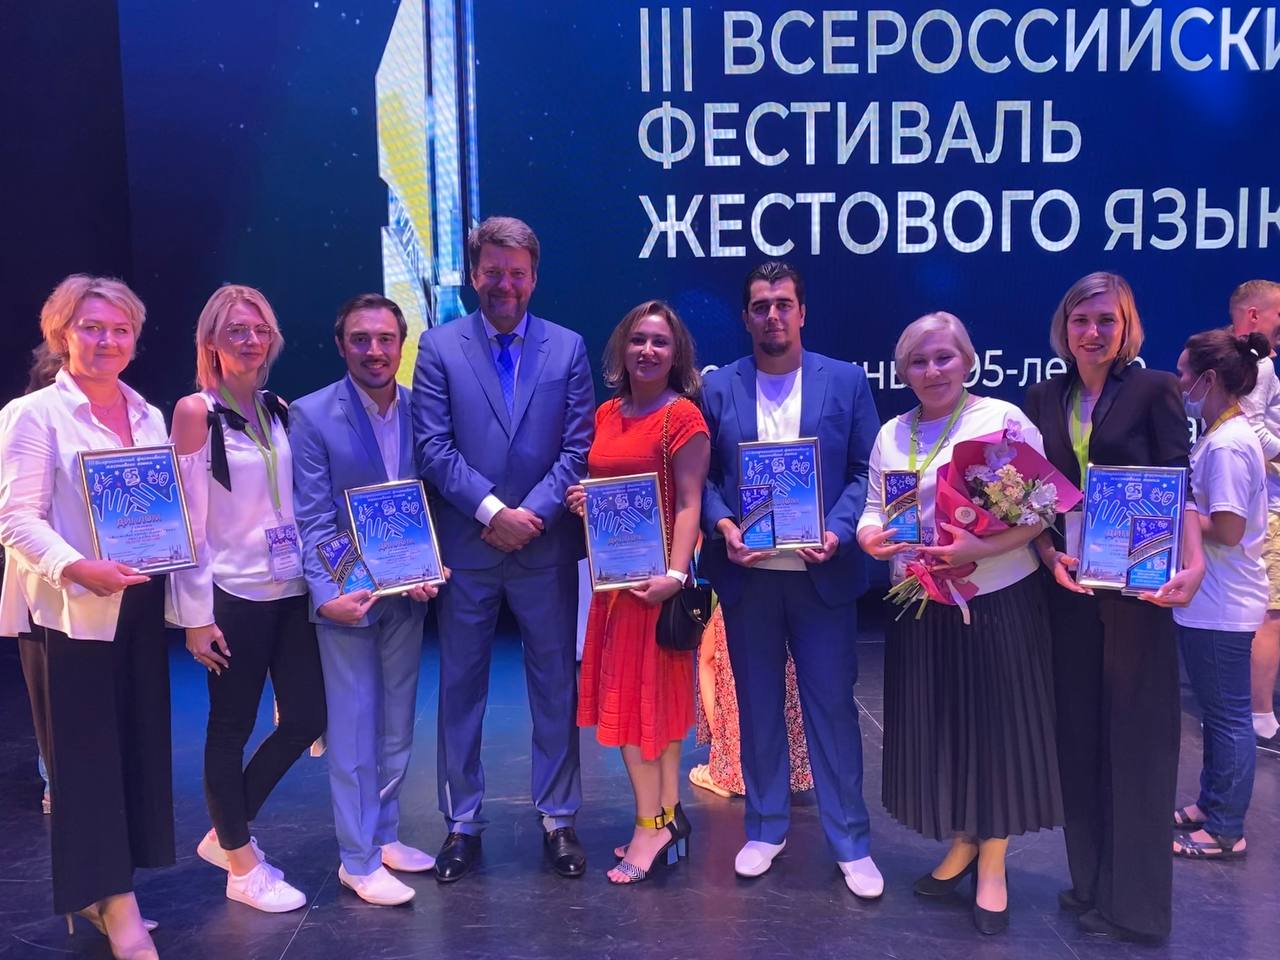 С 15-20 августа прошел III Всероссийский фестиваль жестового языка в городе Казани